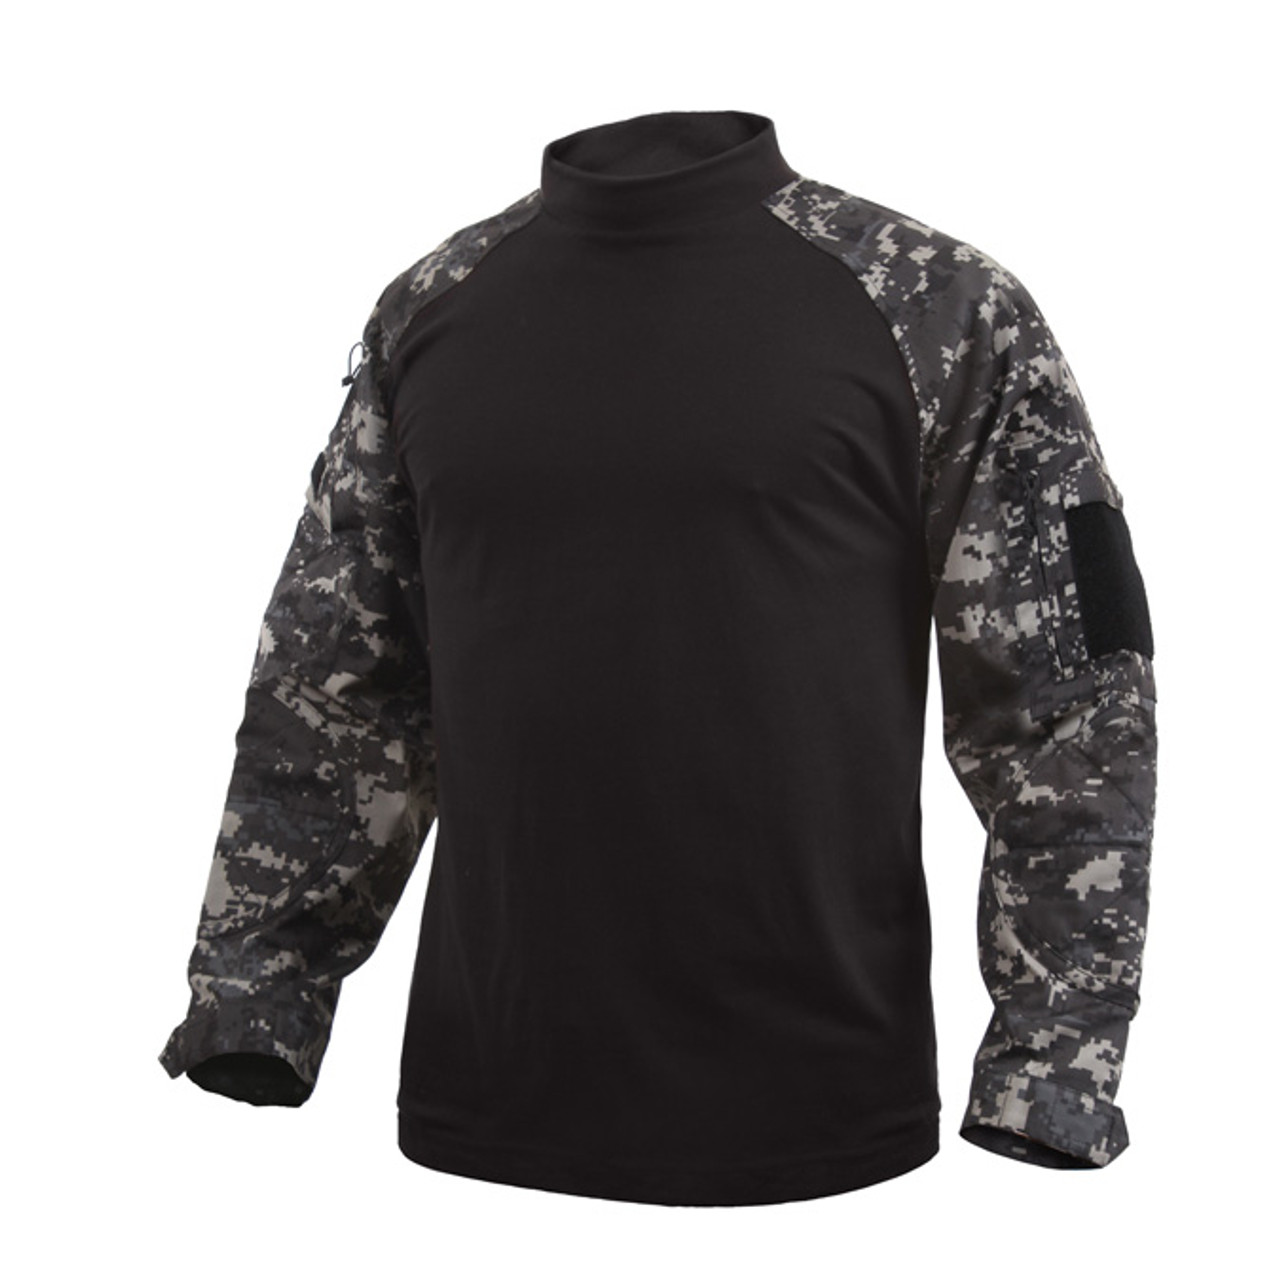  Rothco Mock Turtleneck/Security Shirt, Black, Small